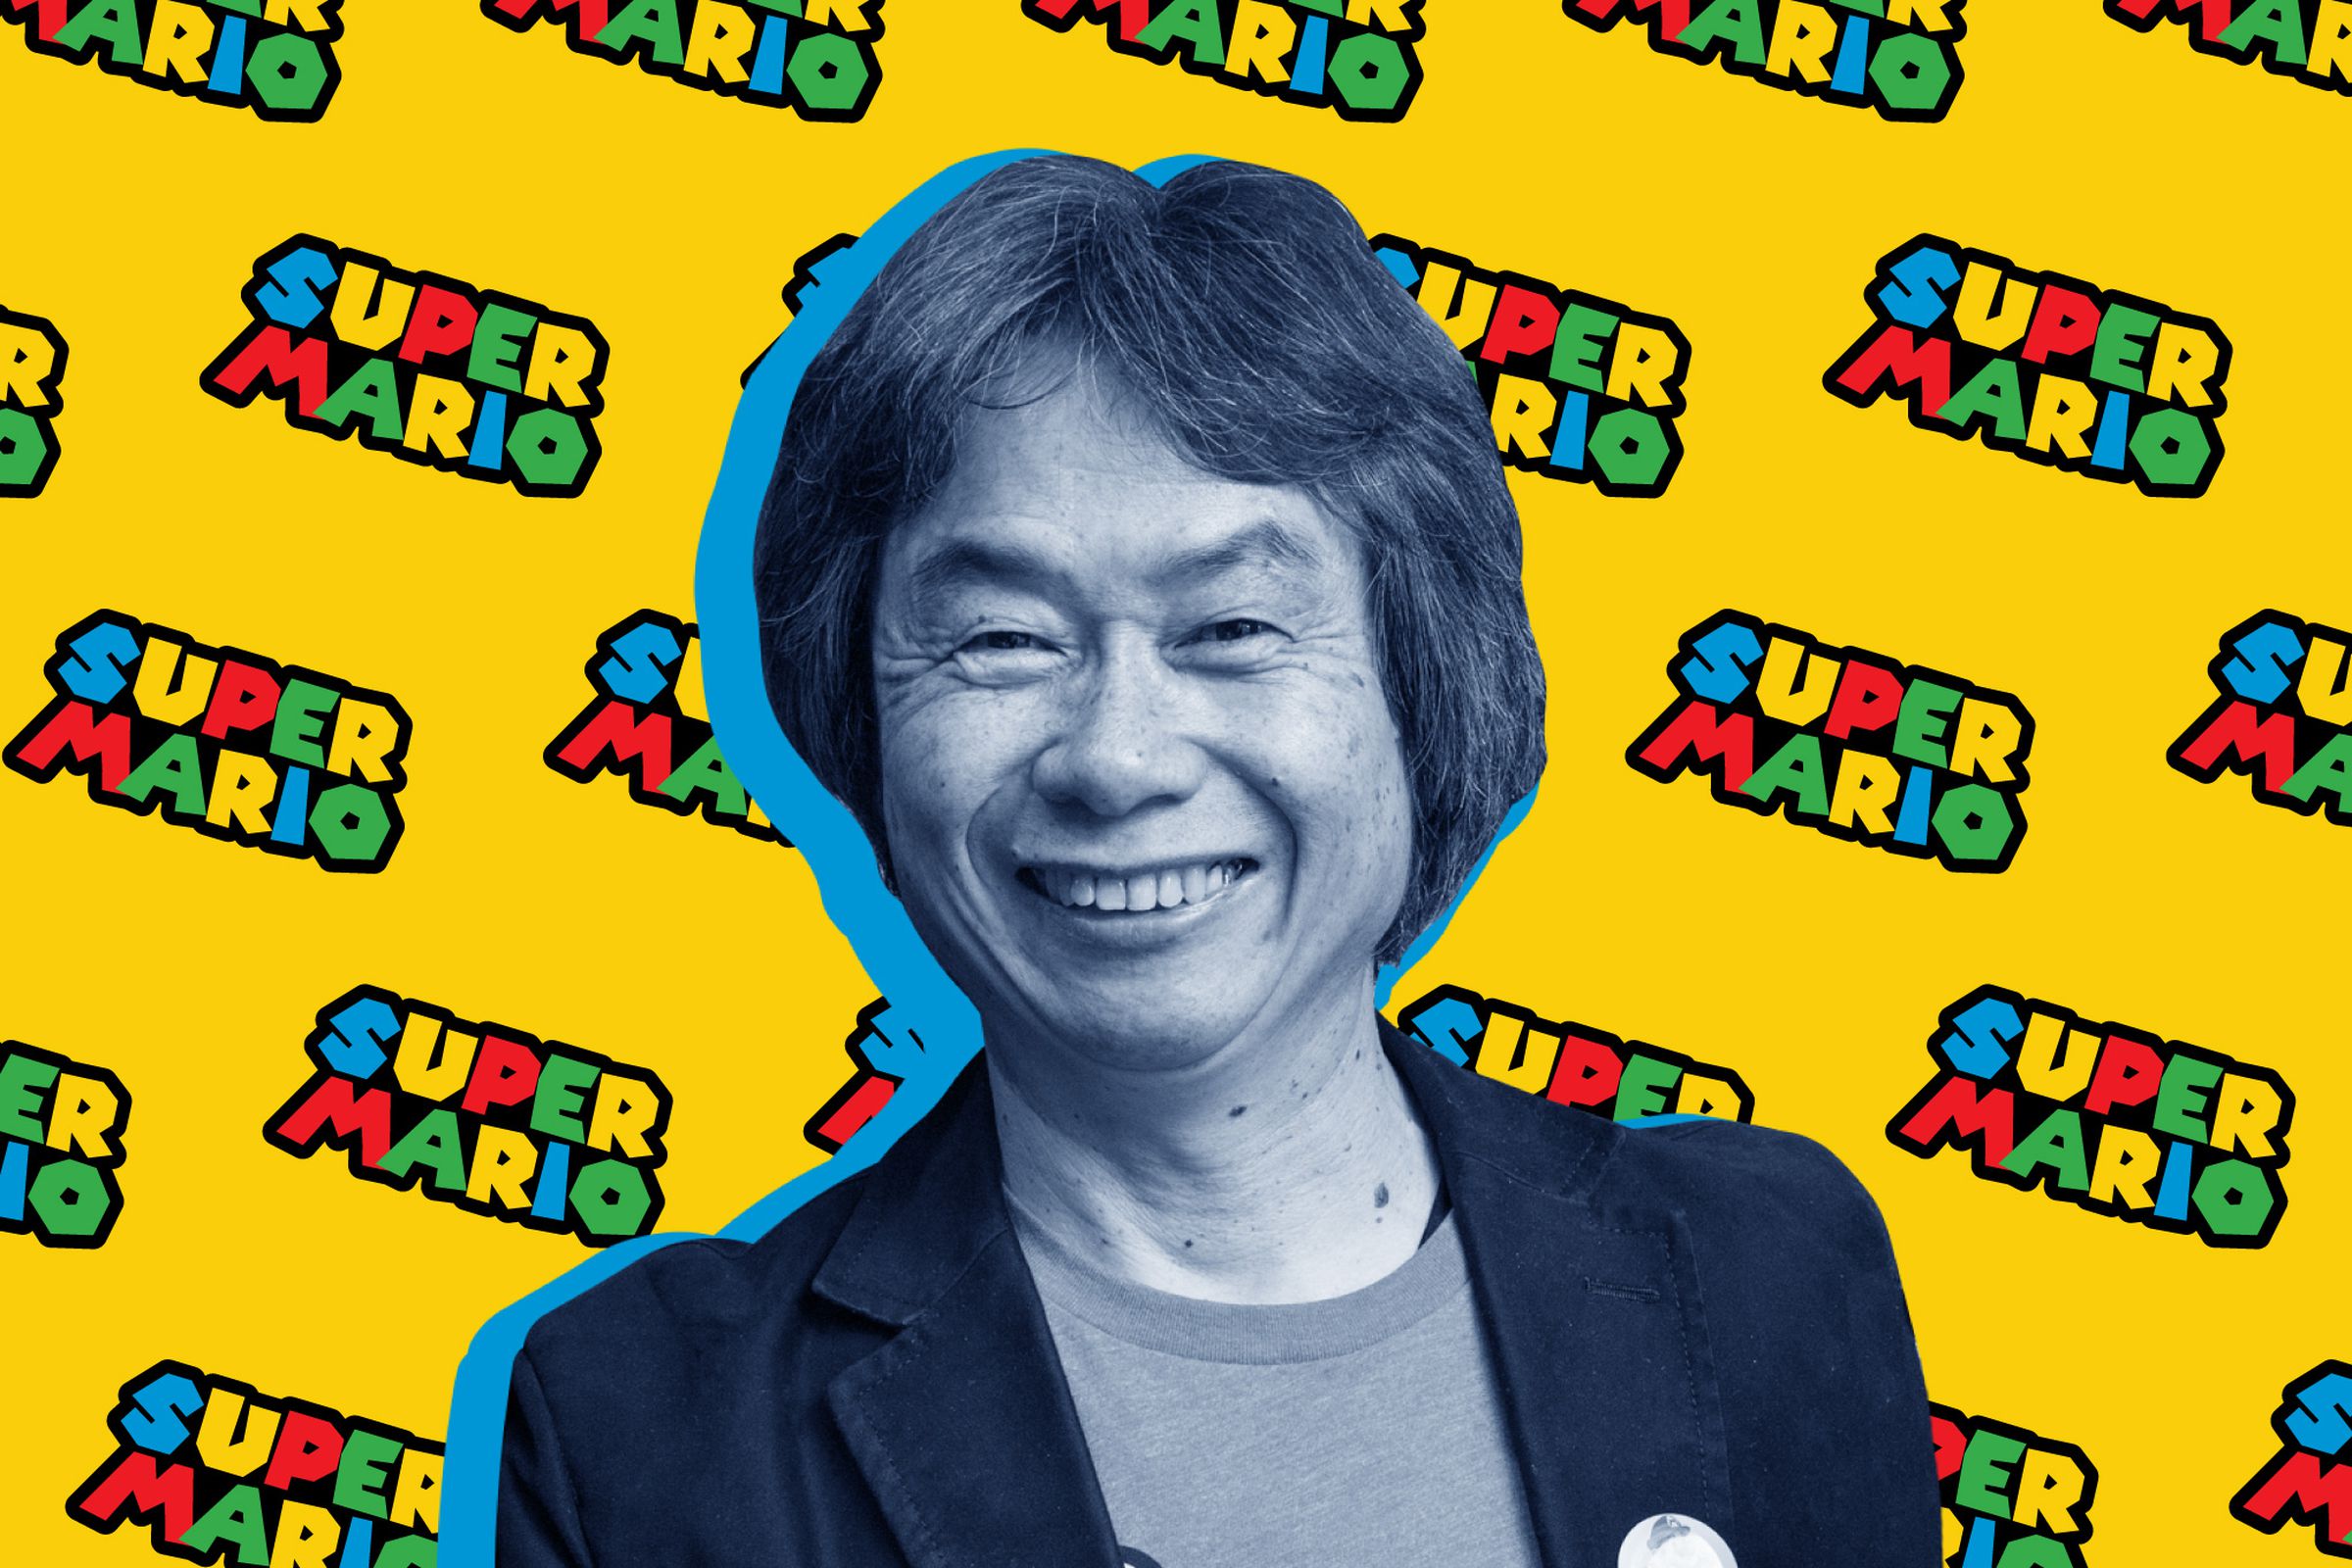 A photo illustration of Shigeru Miyamoto.